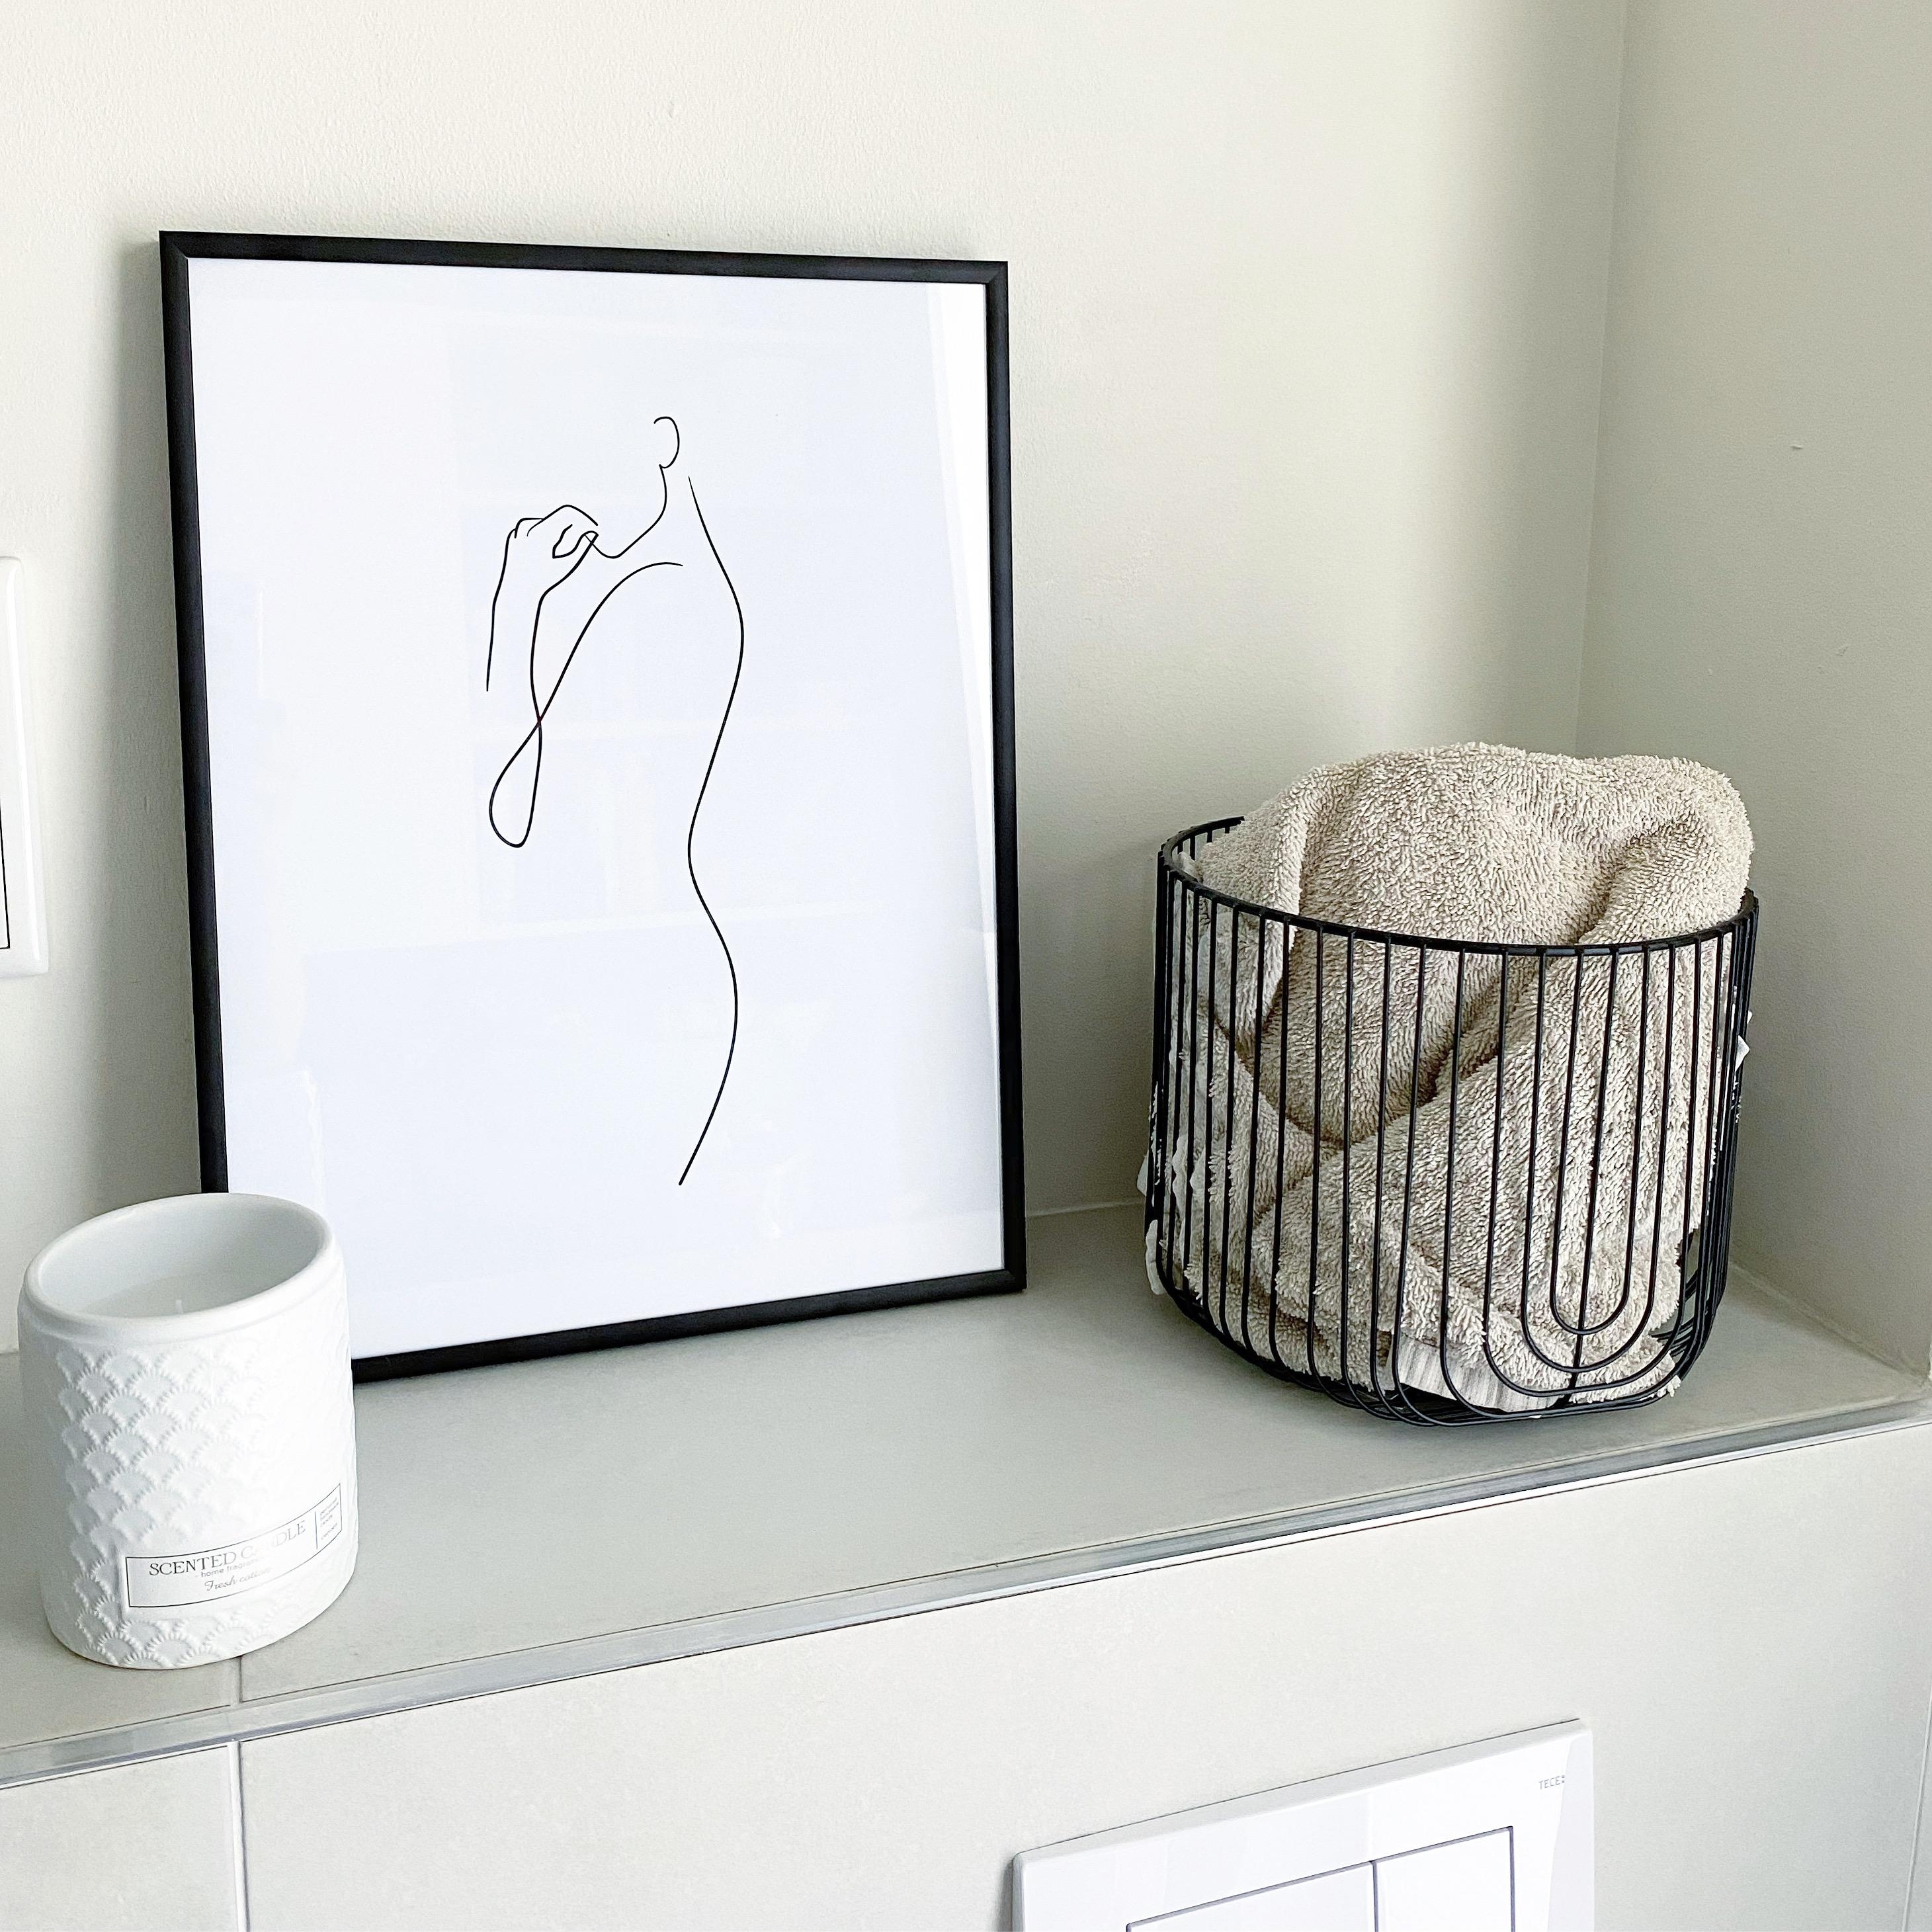 Dies ist ein Ausschnitt aus unserem Badezimmer. Das Bild entspricht genau unserem Stile. #minimalistisch#skandi